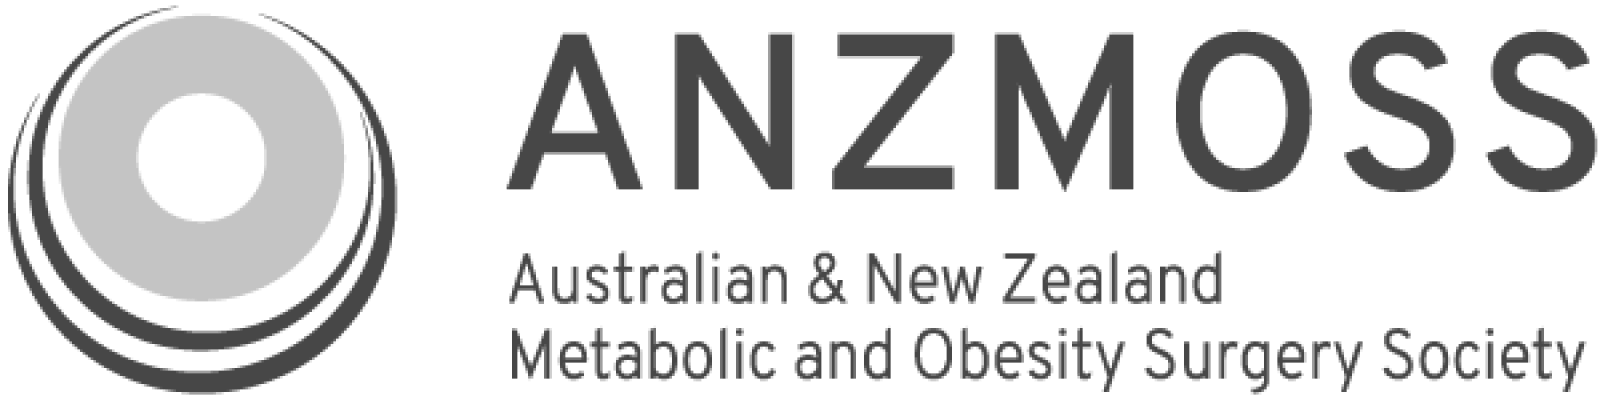 ANZMOSS-logo.png